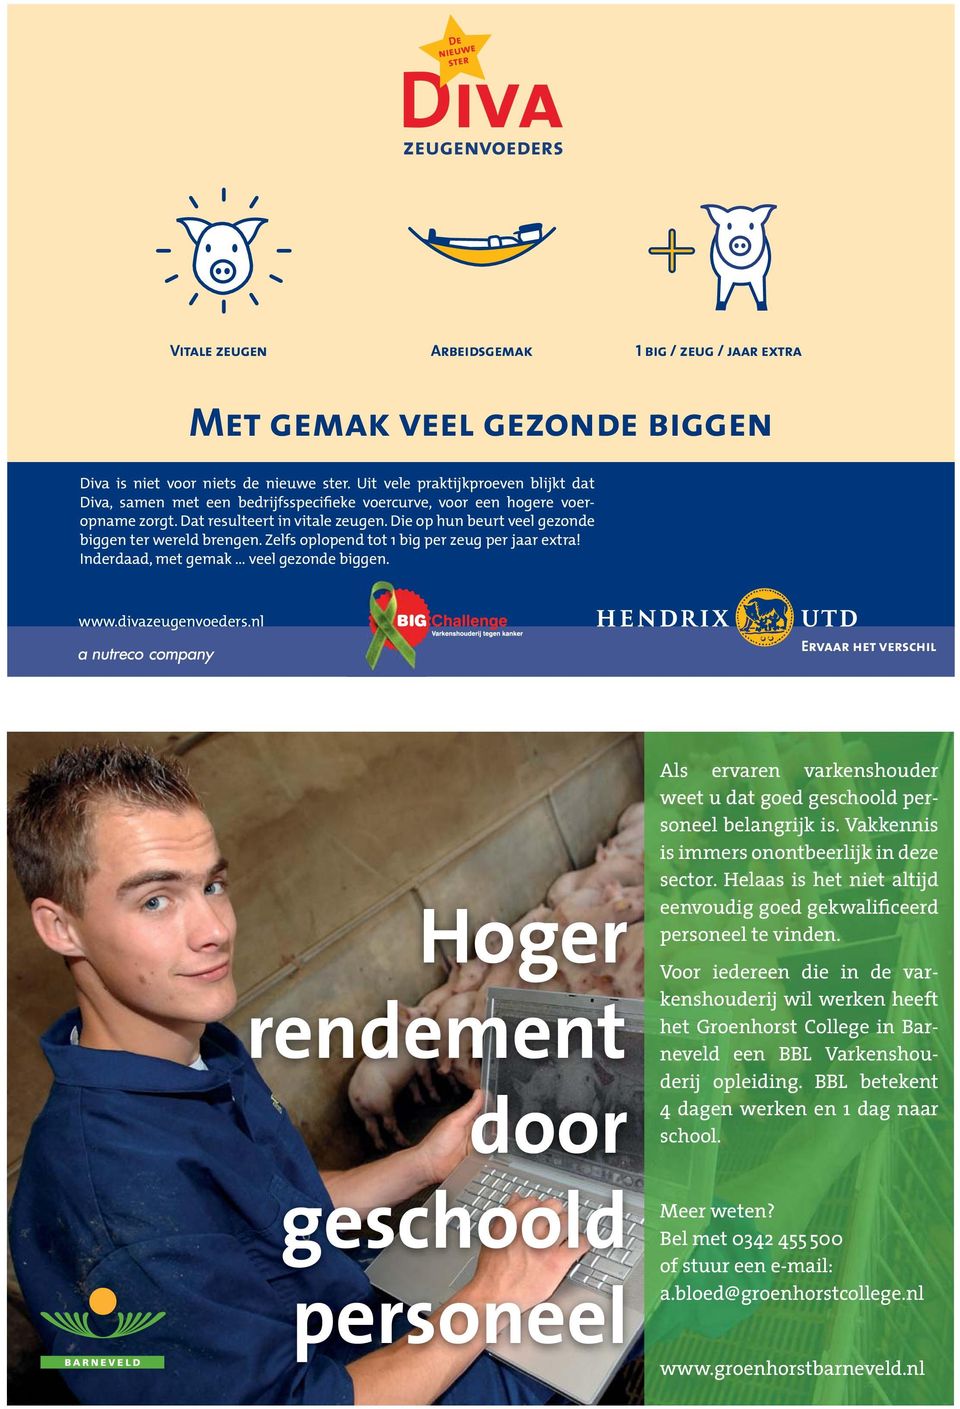 Voor iedereen die in de varkenshouderij wil werken heeft het Groenhorst College in Barneveld een BBL Varkenshouderij opleiding.